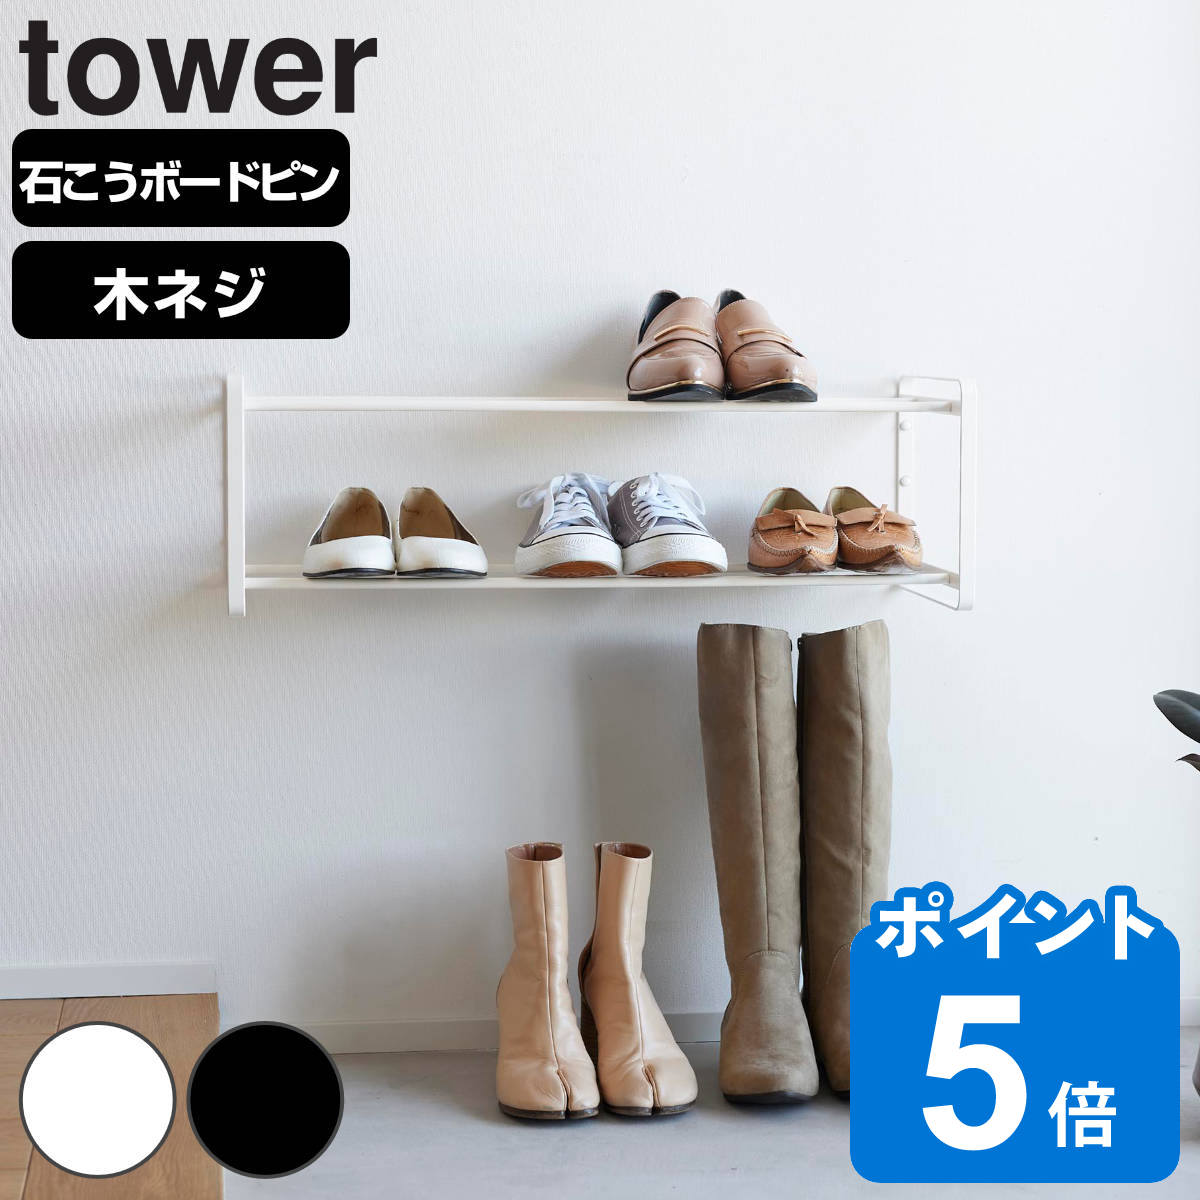 山崎実業 tower 石こうボード壁対応ウォールシューズラック タワー 2段